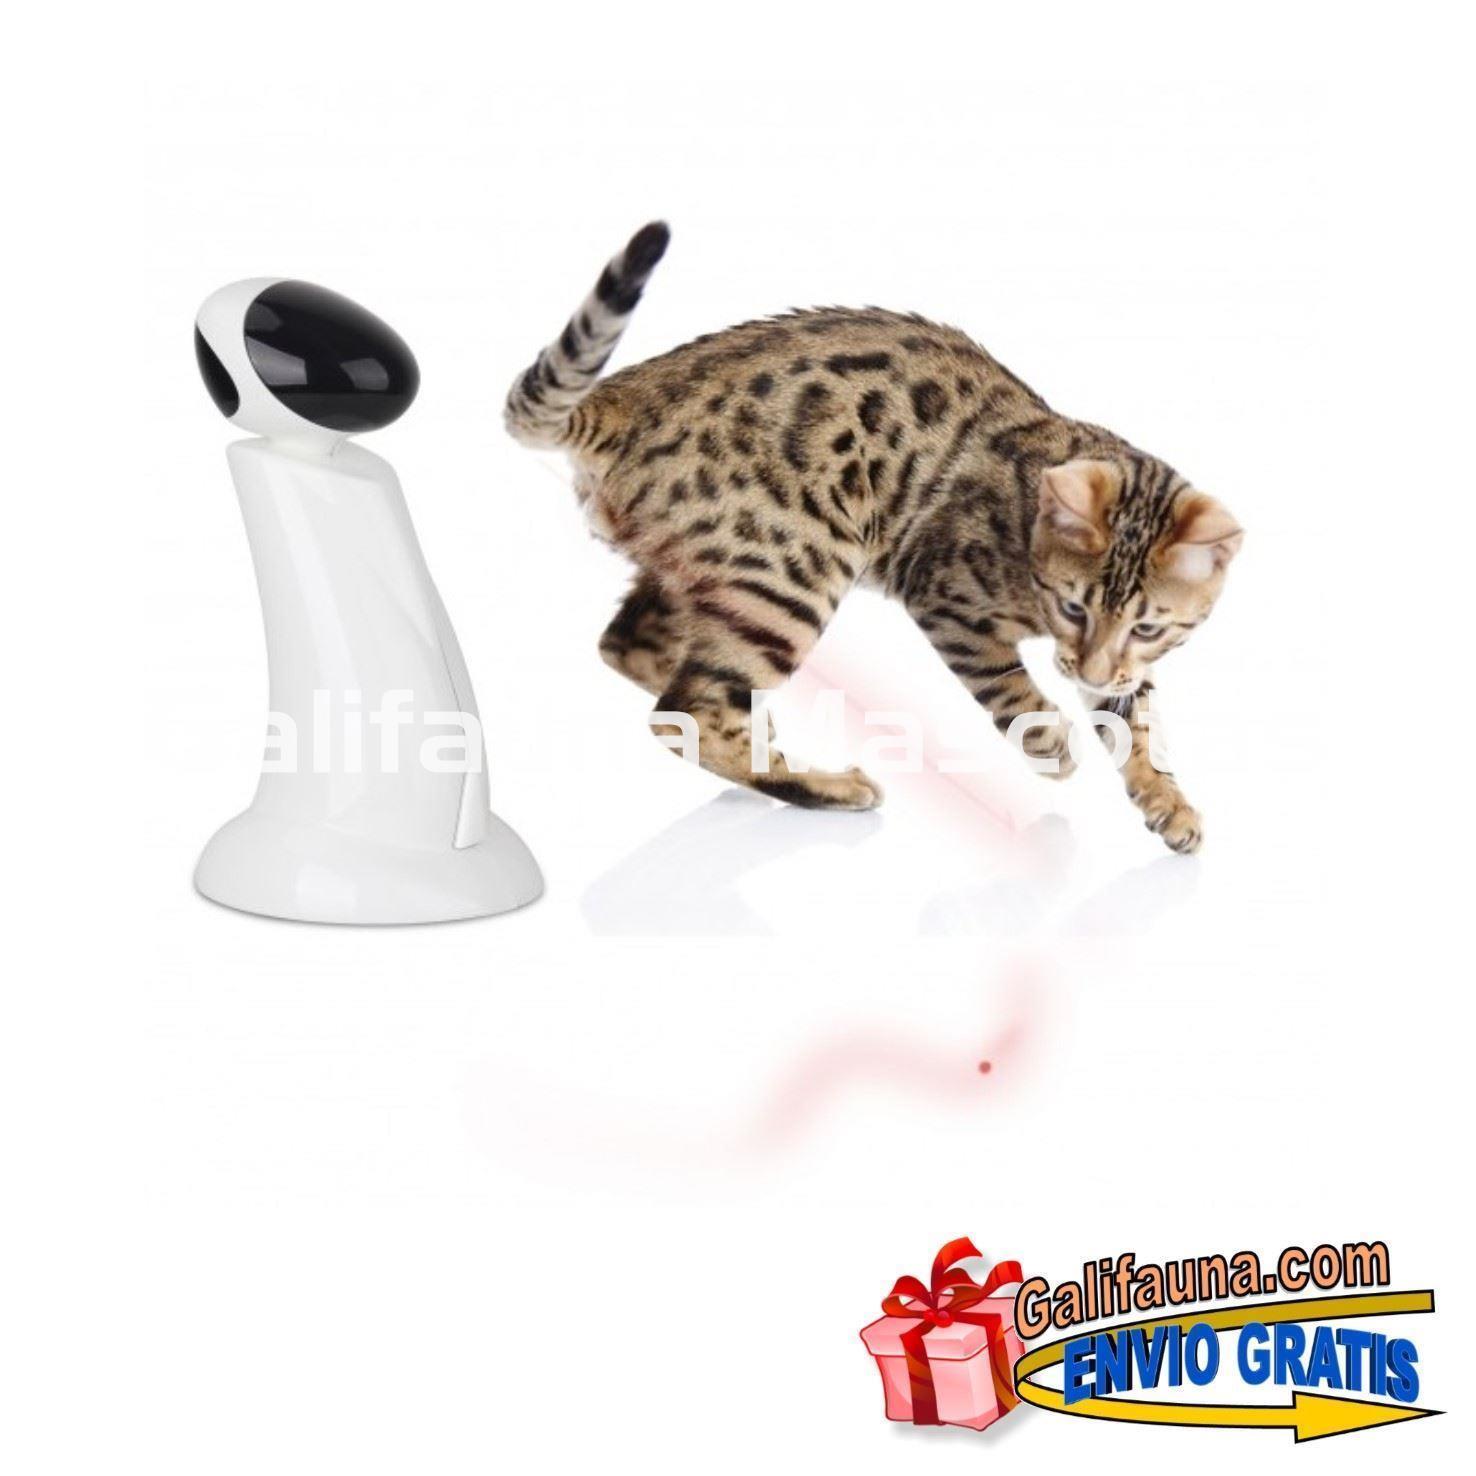 Juguete interactivo para gato RAYO LASER de All for Paws. - Imagen 1